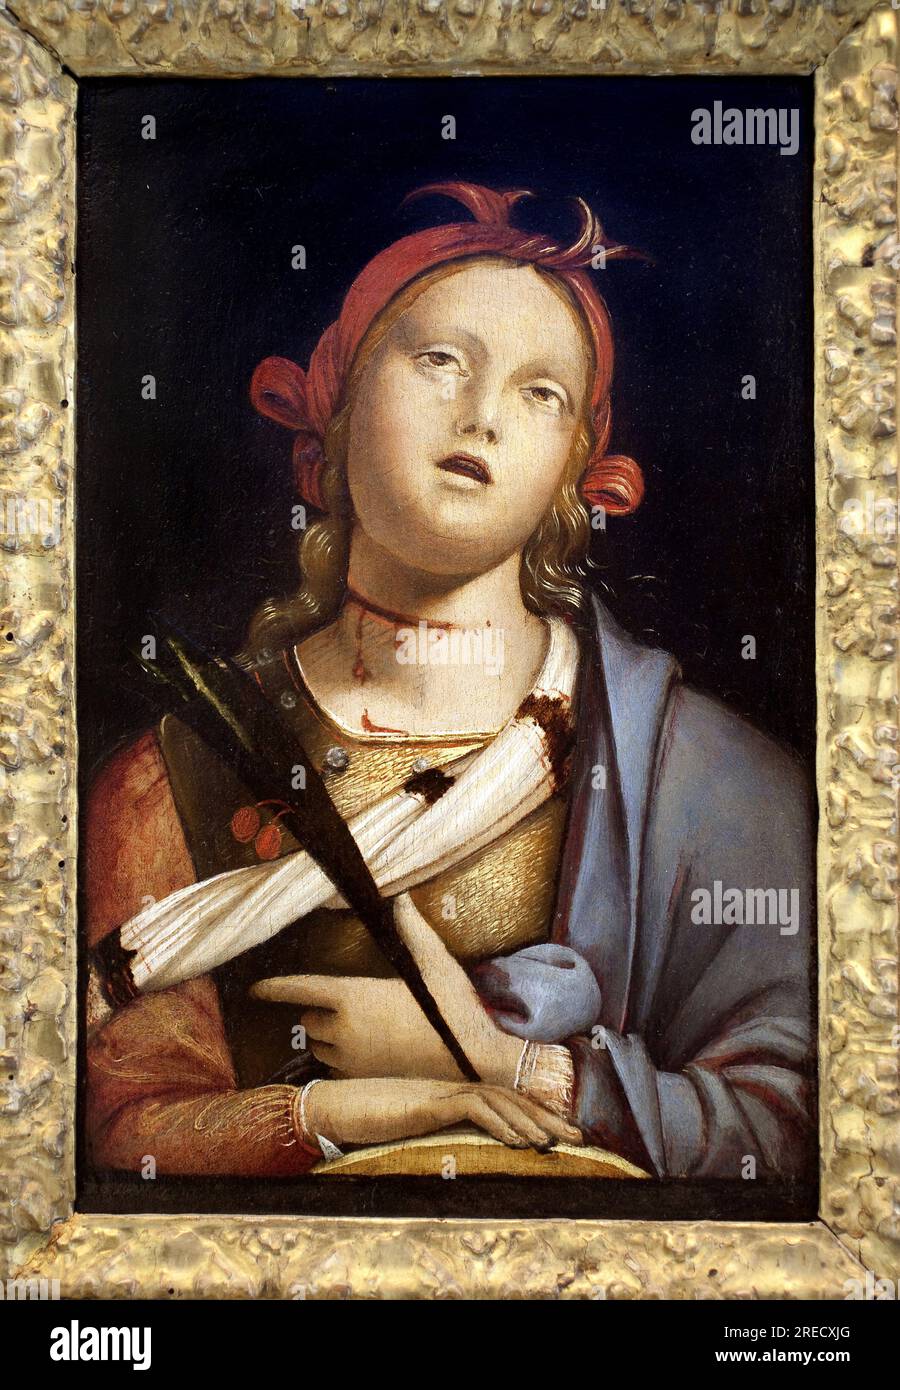 Sainte Catherine d'Alexandrie. Peinture de Bernardo (Bernardino) Zenale (vers 1436-1526), detrempe sur bois, vers 1500. Art italien, renaissance. Musee des Beaux Arts de Nancy. Stock Photo